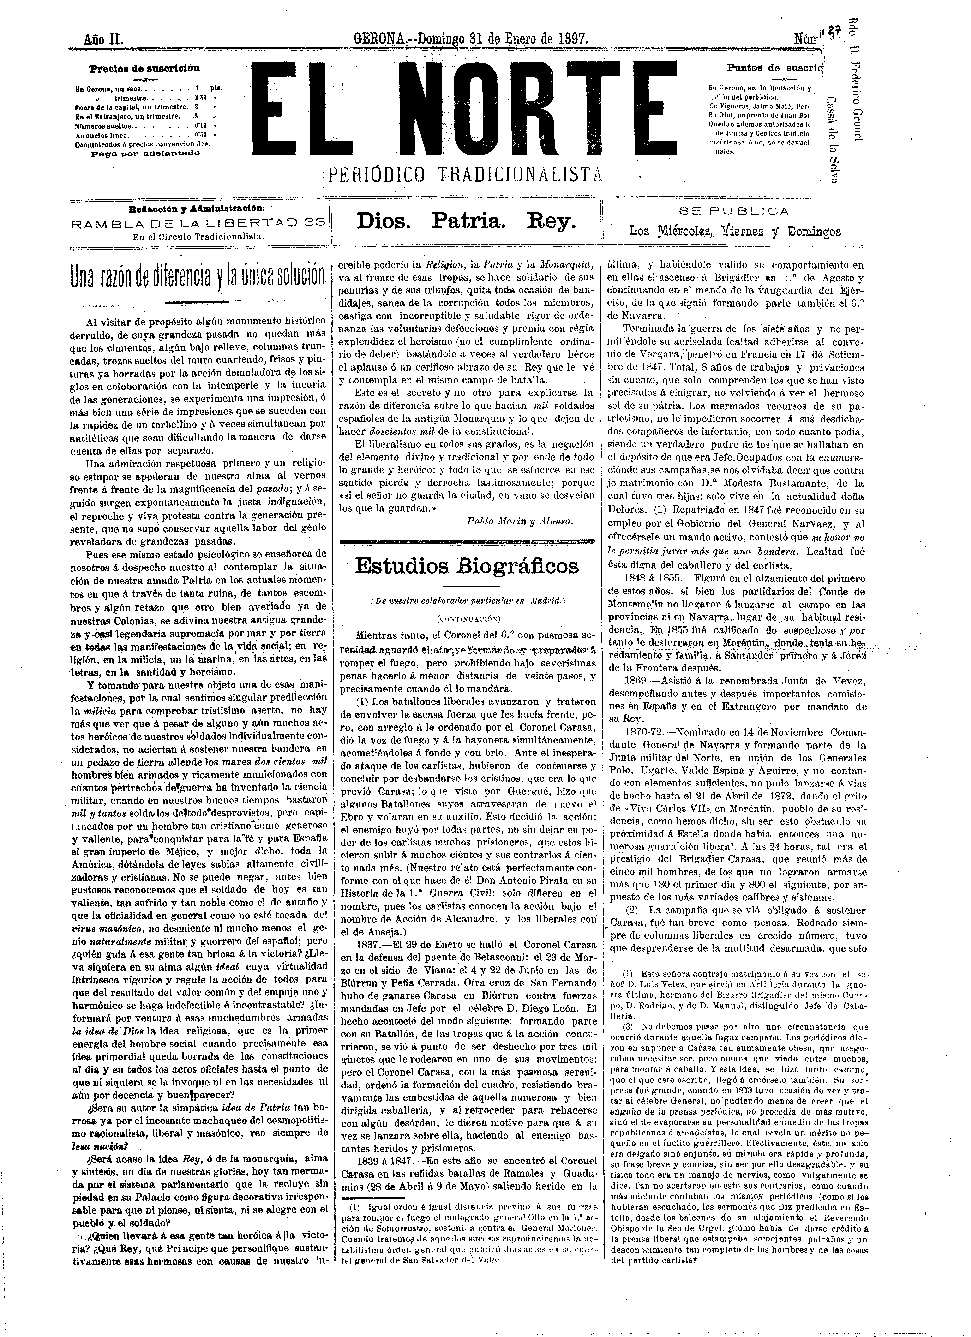 Norte, El. 31/1/1897. [Issue]